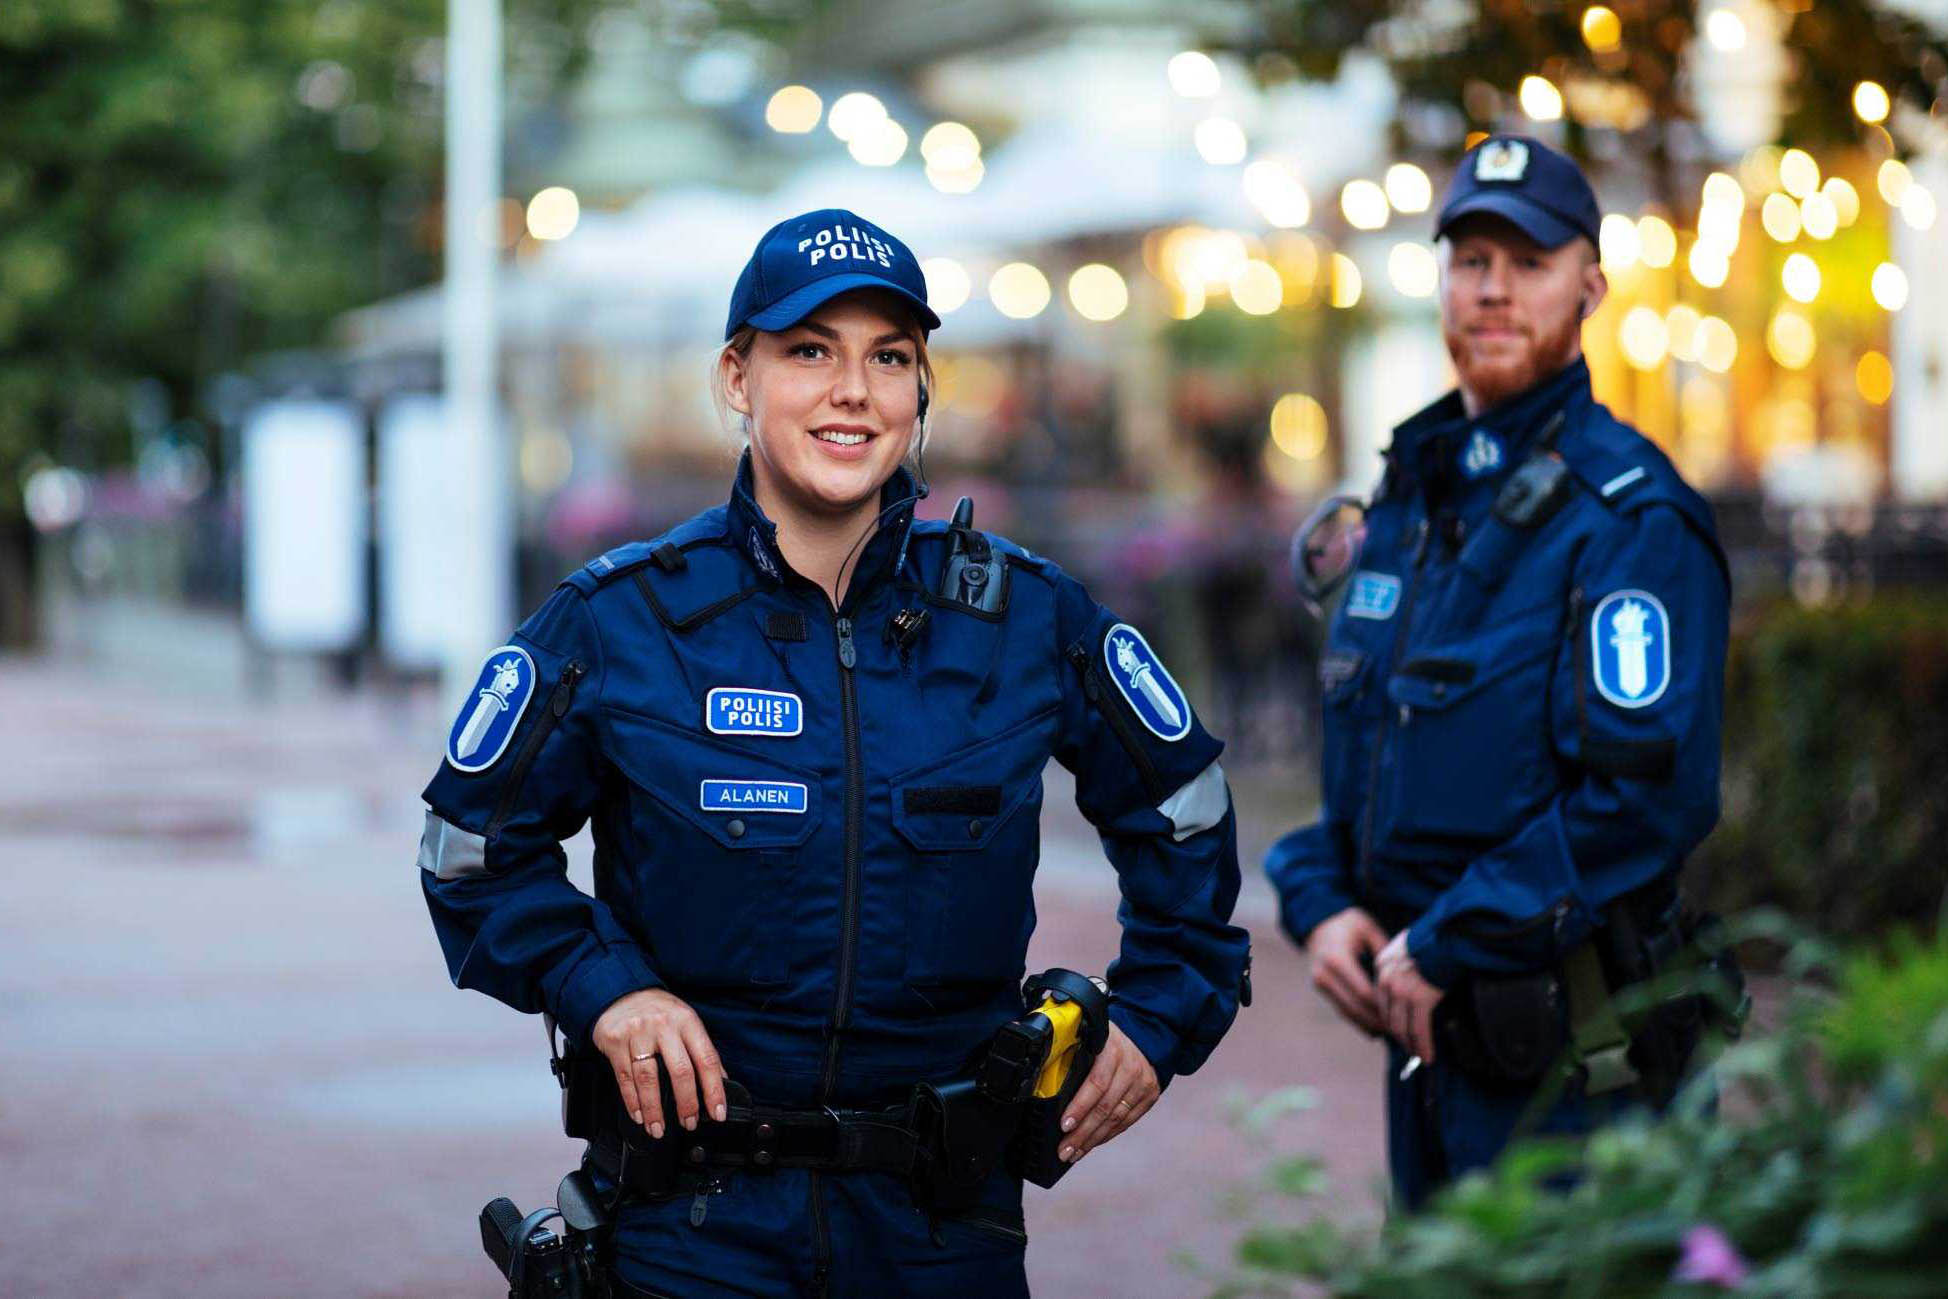 Kaksi poliisia kasvot kuvaajaan päin, etualalla naispoliisi ja taaempana seisoo punapartainen miespoliisi. Molemmilla päällä sininen poliisin kenttähaalari varusteineen ja päässä poliisin lippalakit. Taustalla kasvillisuutta ja kaupungin valoja.